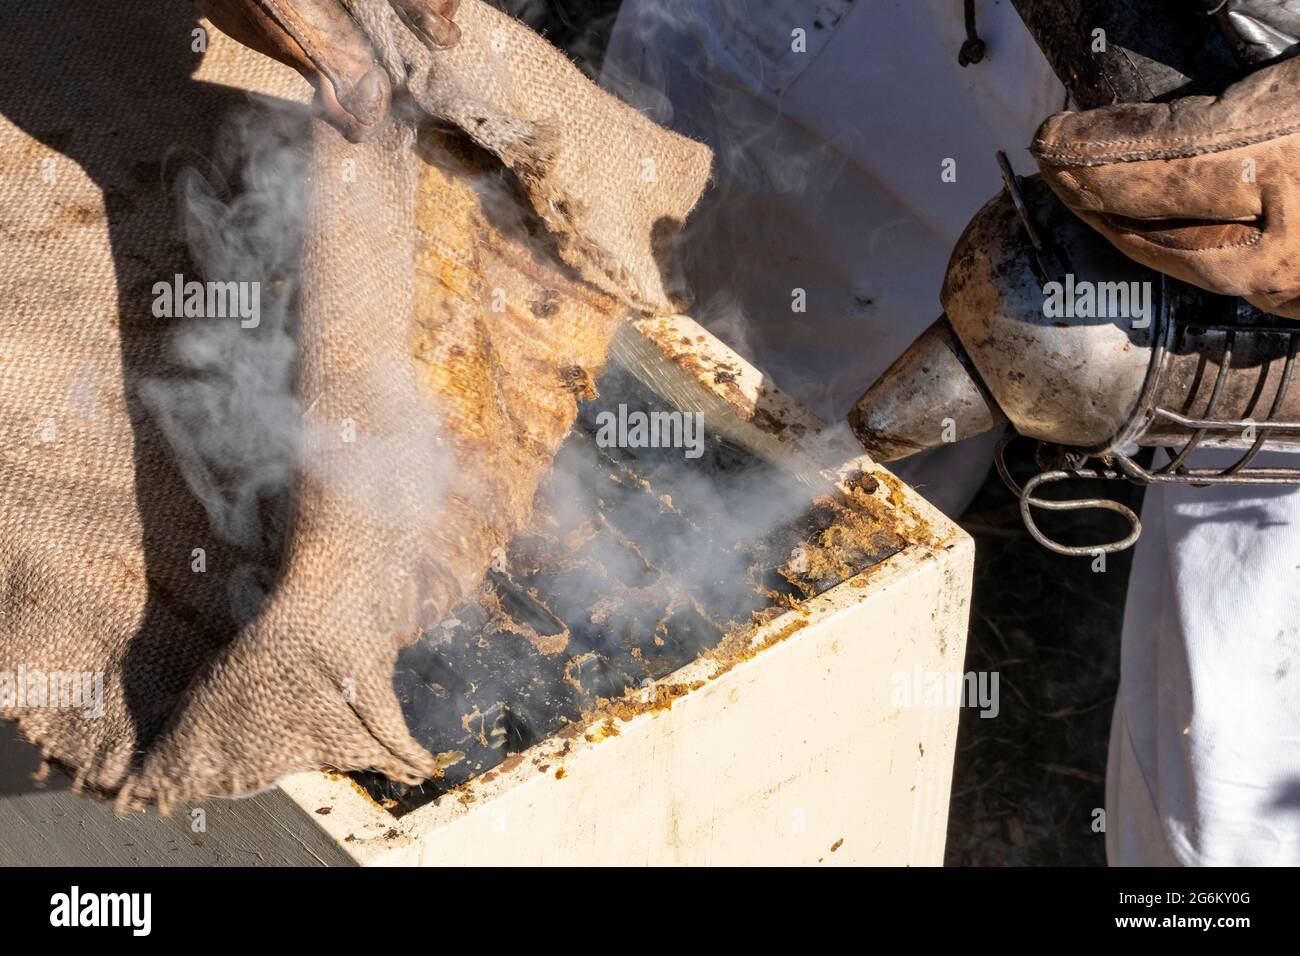 Un apicultor fuma abejas de miel en una colmena en un apiario en Canterbury cerca de los Alpes del Sur de la Isla del Sur. Imagen de Bradley White Foto de stock